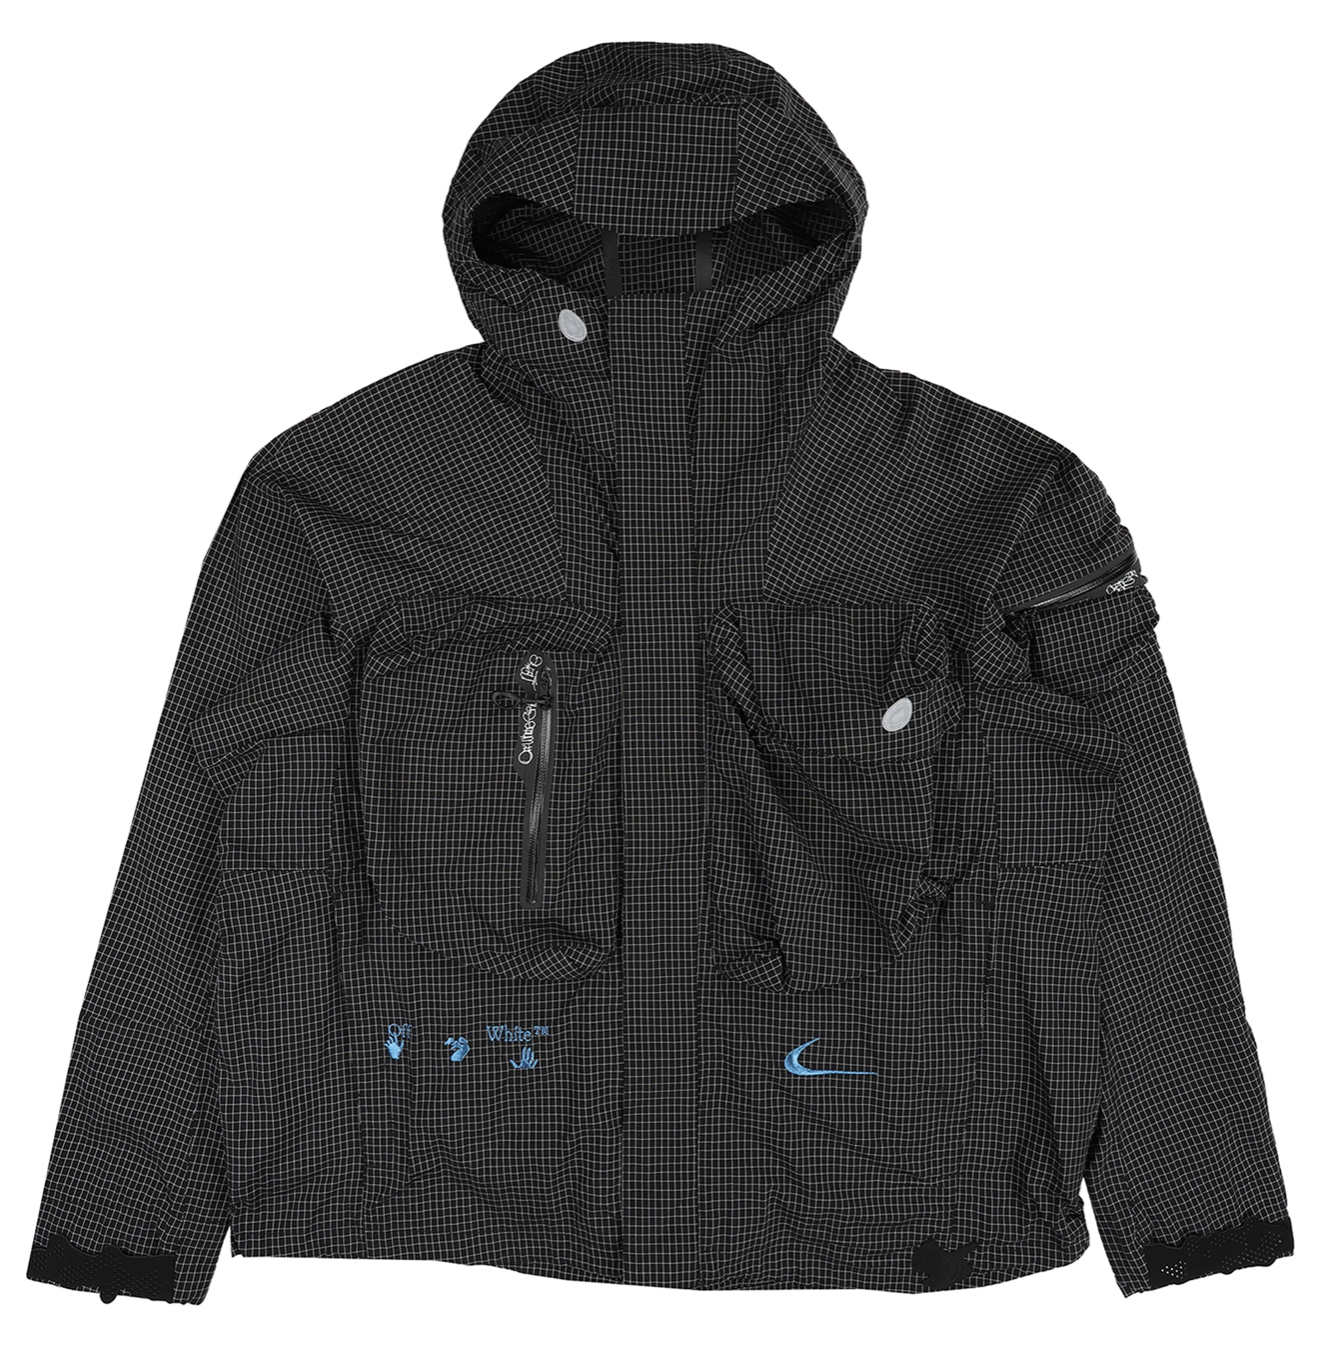 Off-White x Nike Grid Jacket - Black